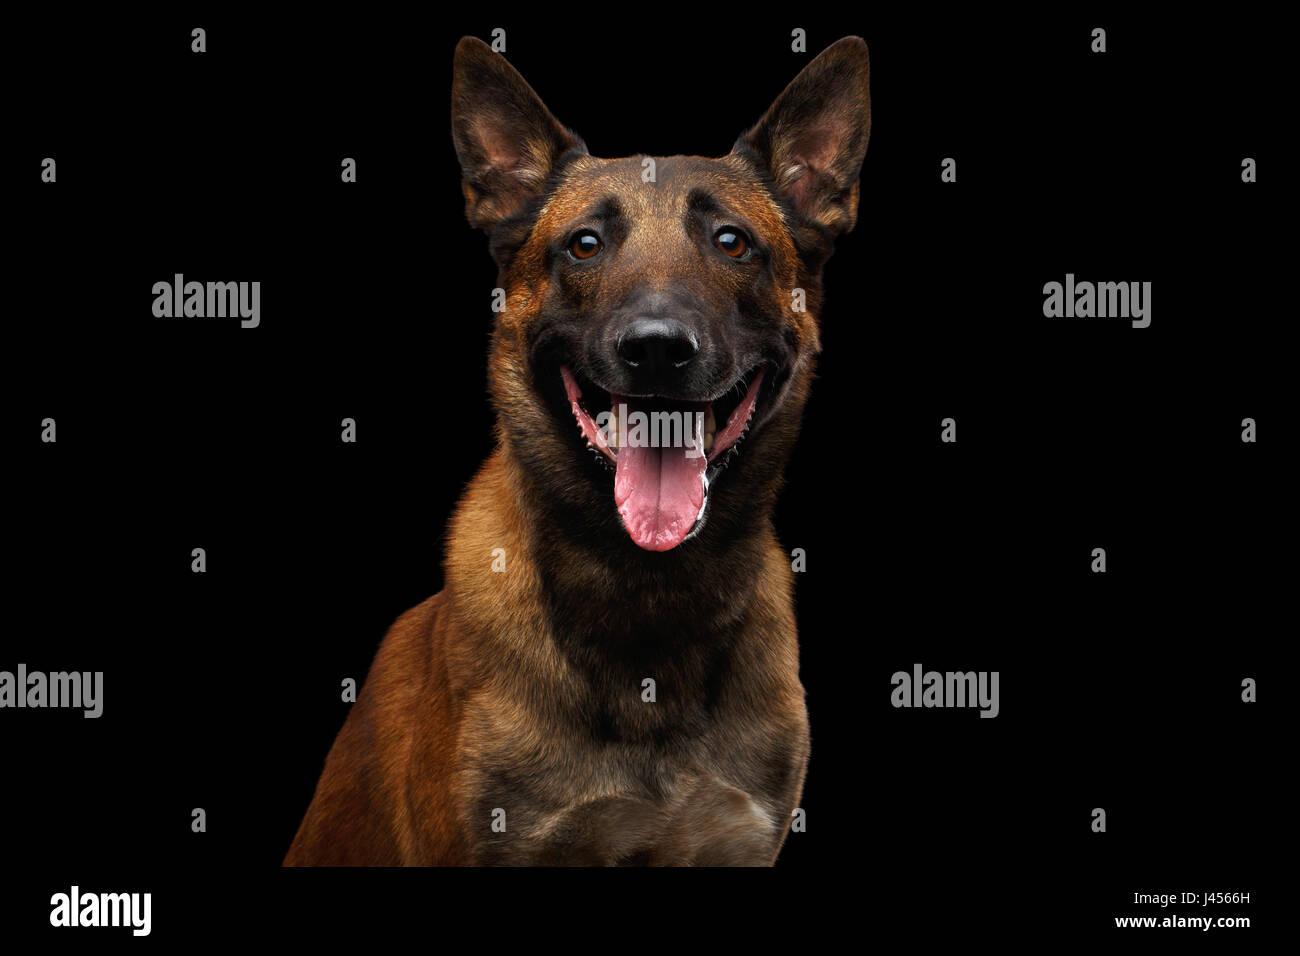 Belgian Shepherd Dog malinois Stock Photo